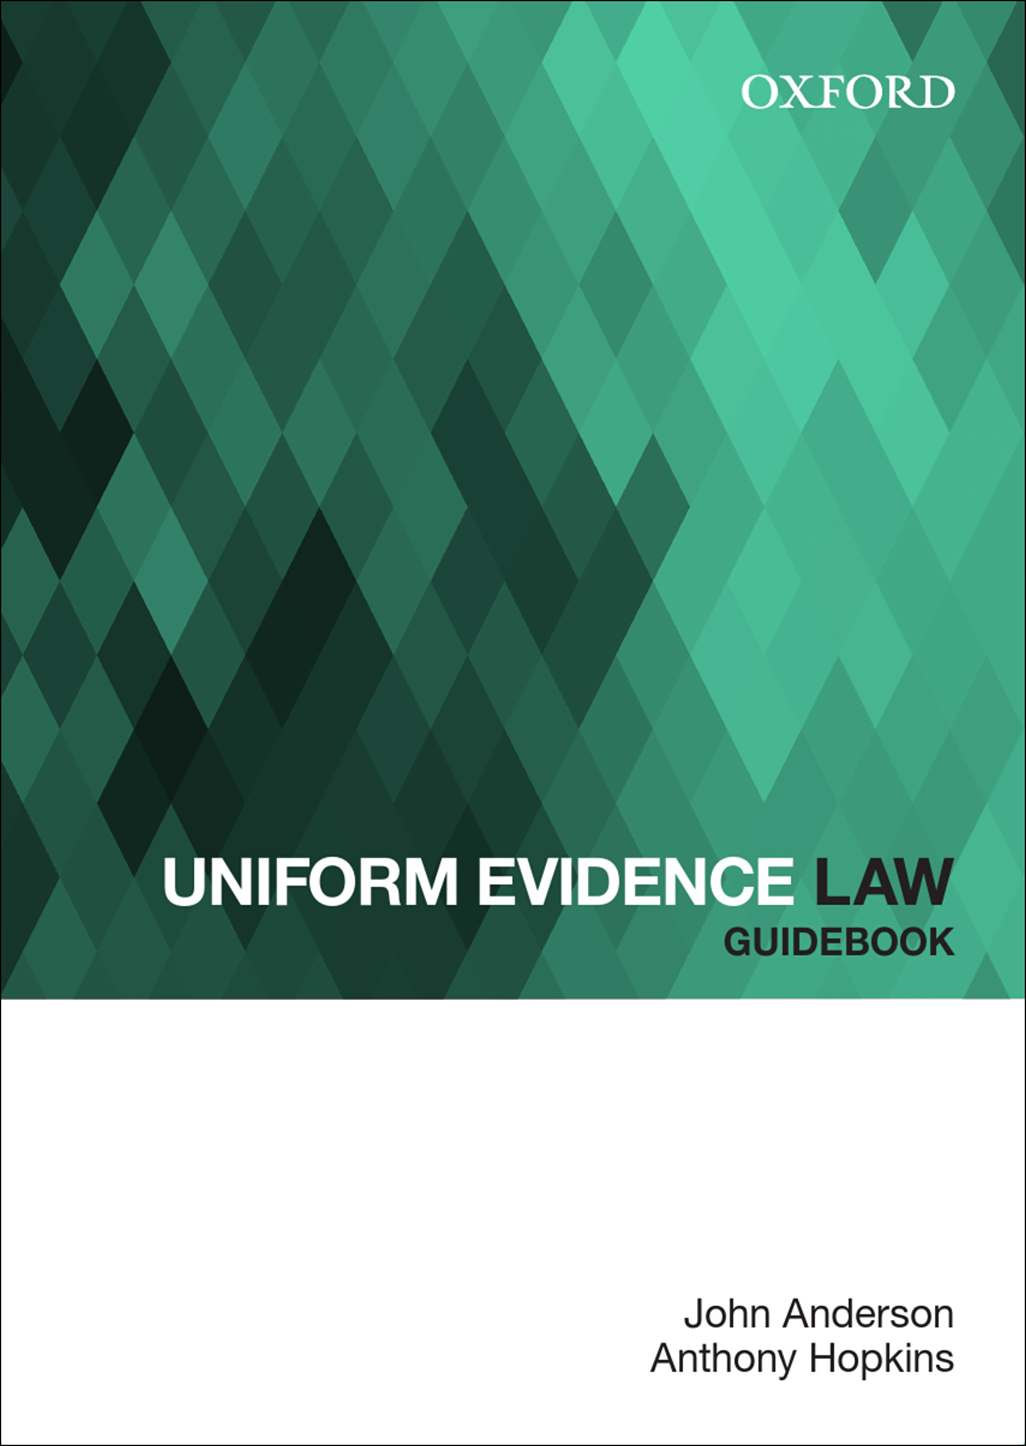 Uniform Evidence Law Guidebook ebook